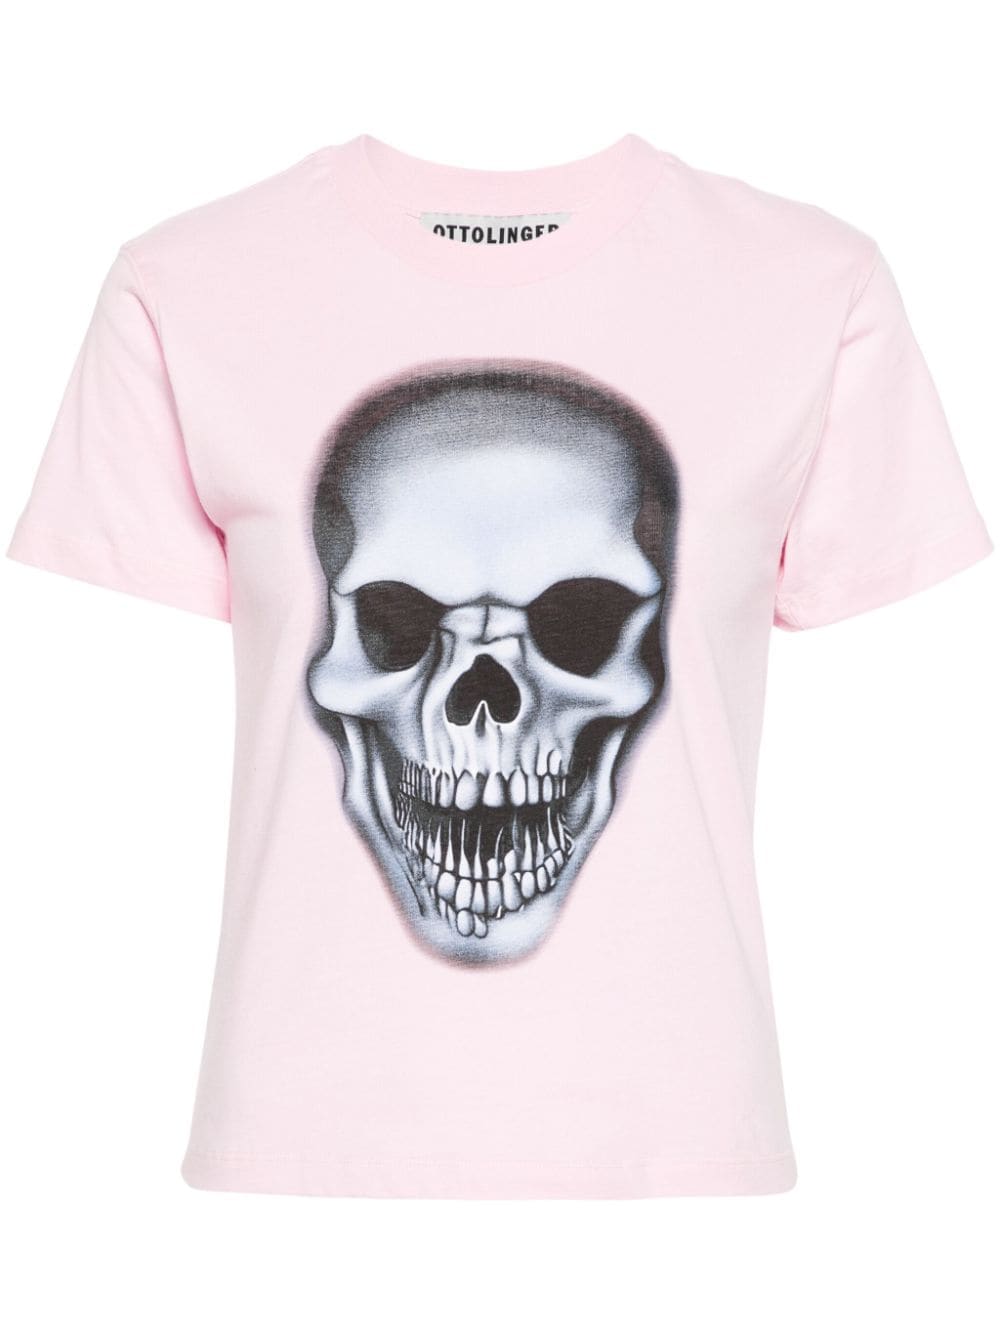 ottolinger t-shirt à imprimé tête de mort - rose